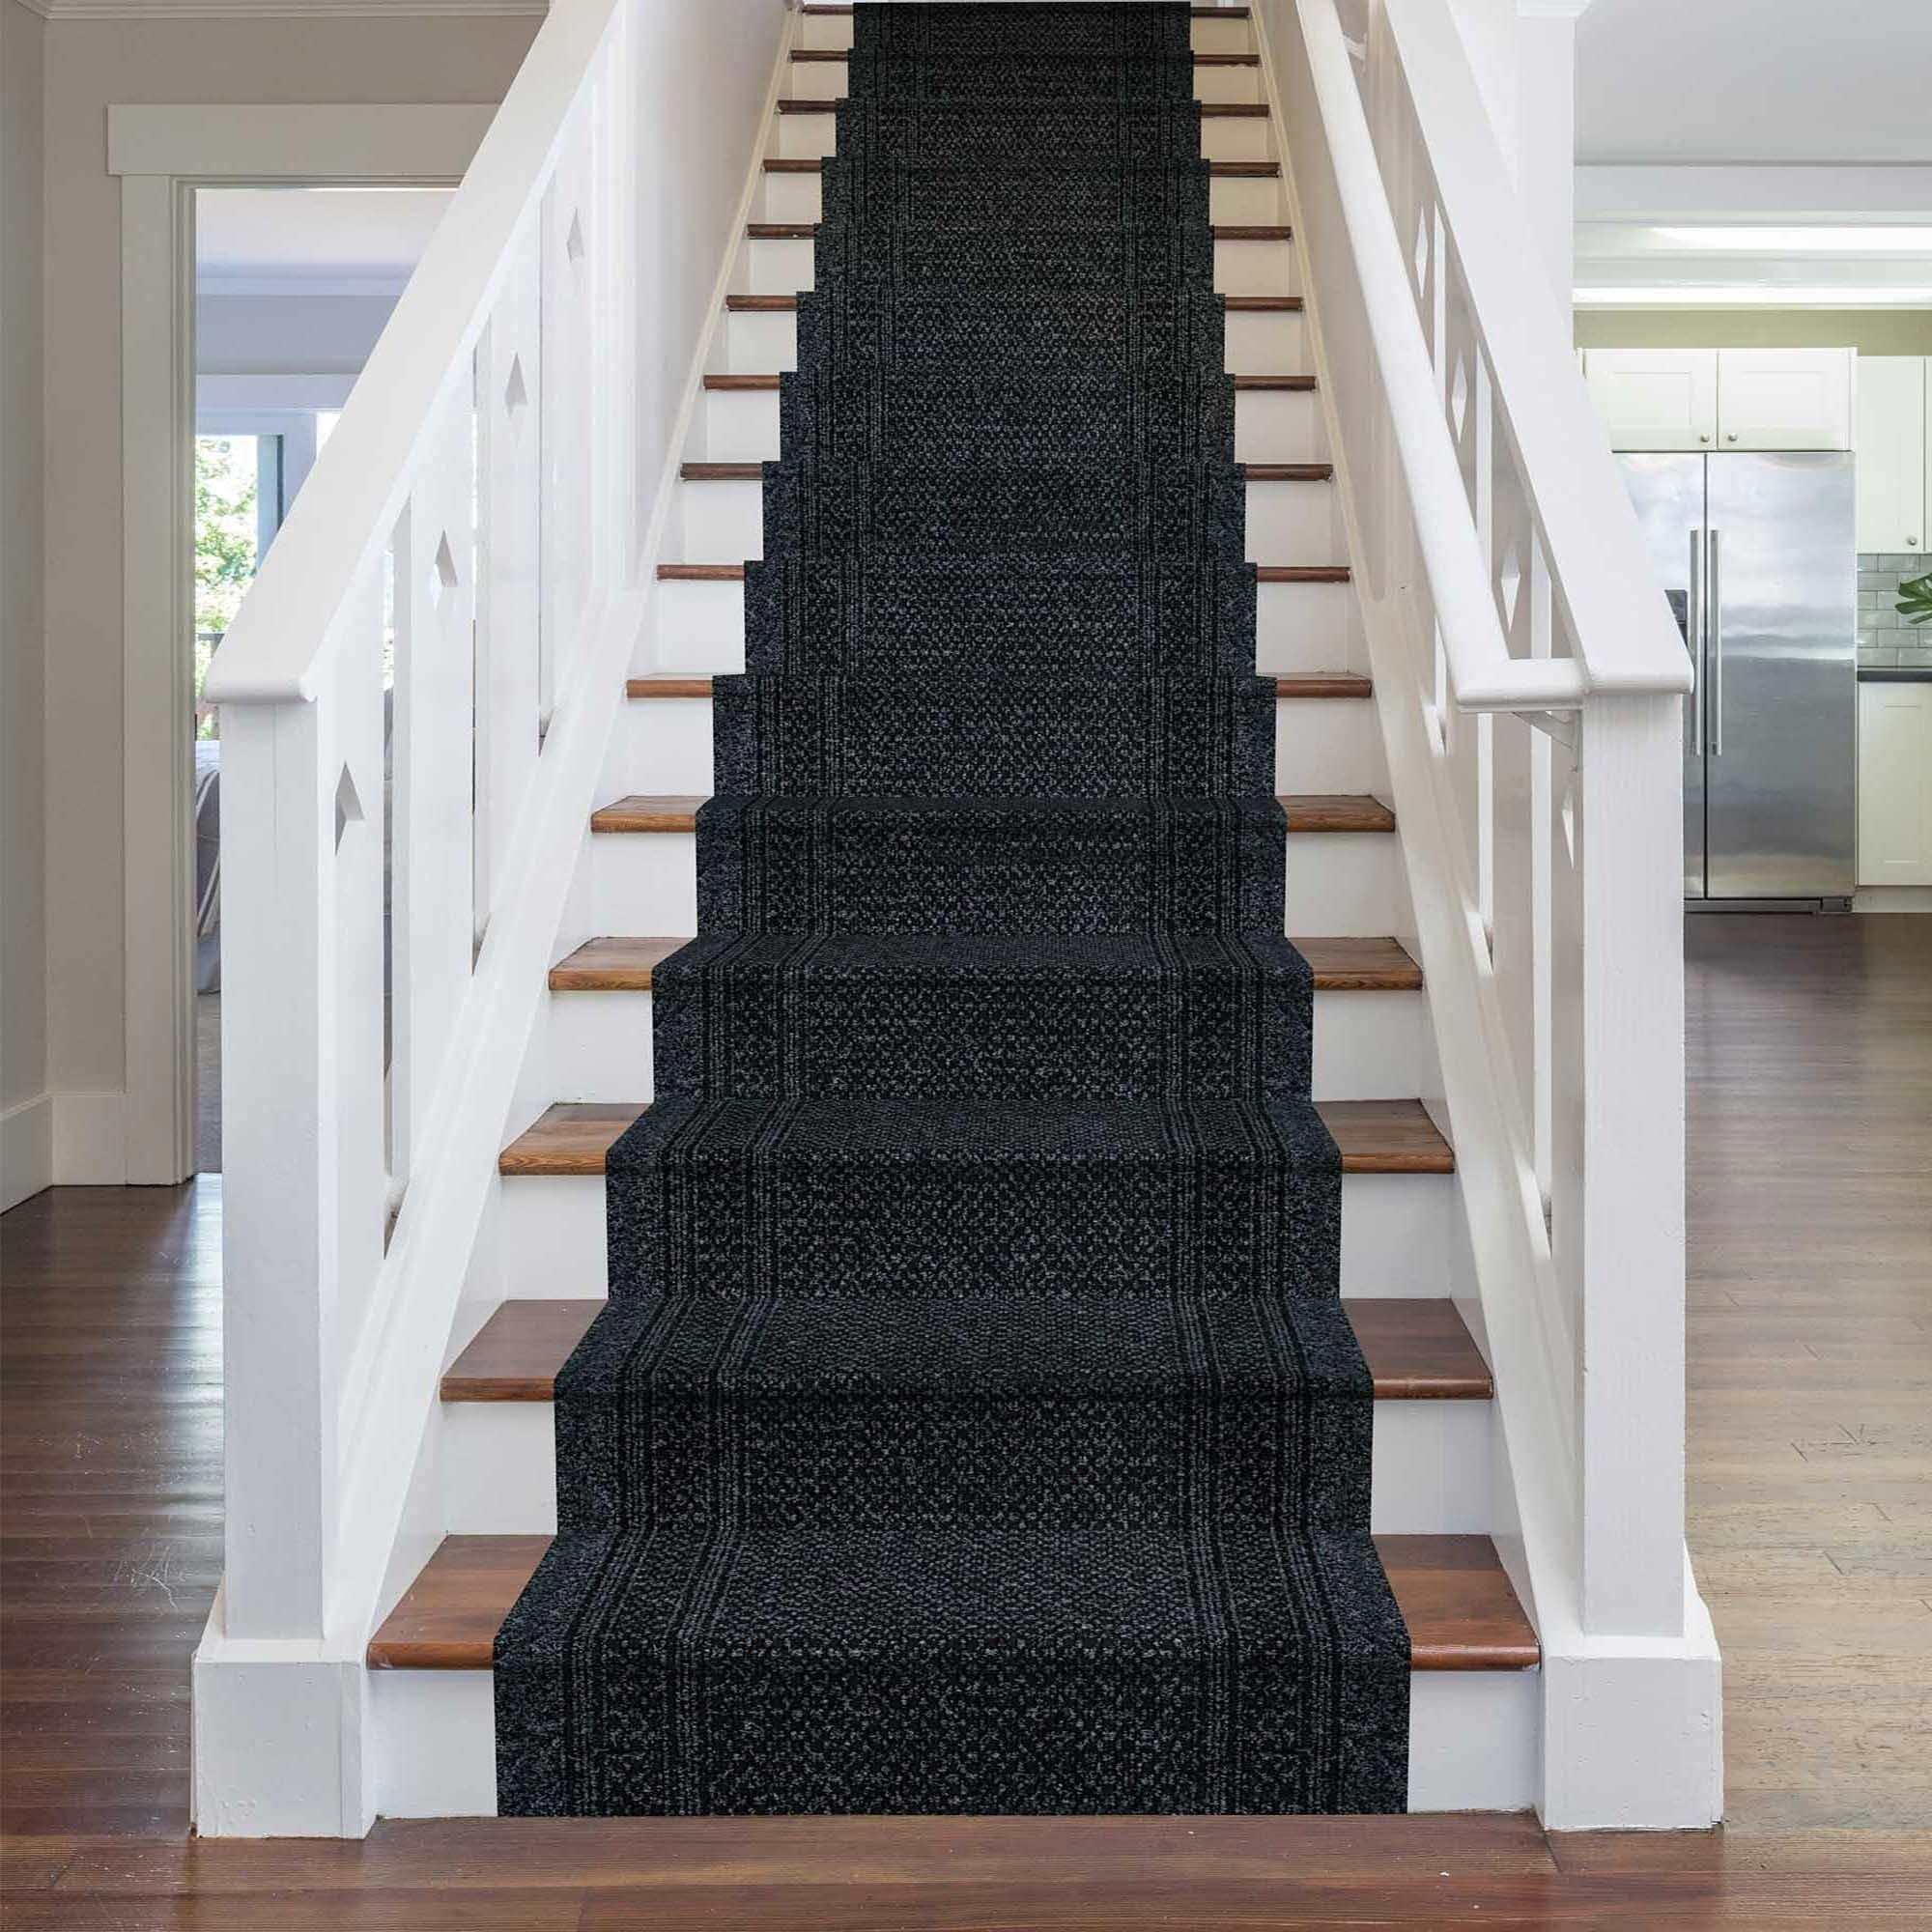 Black Aztec Stair Carpet Runner - image 1